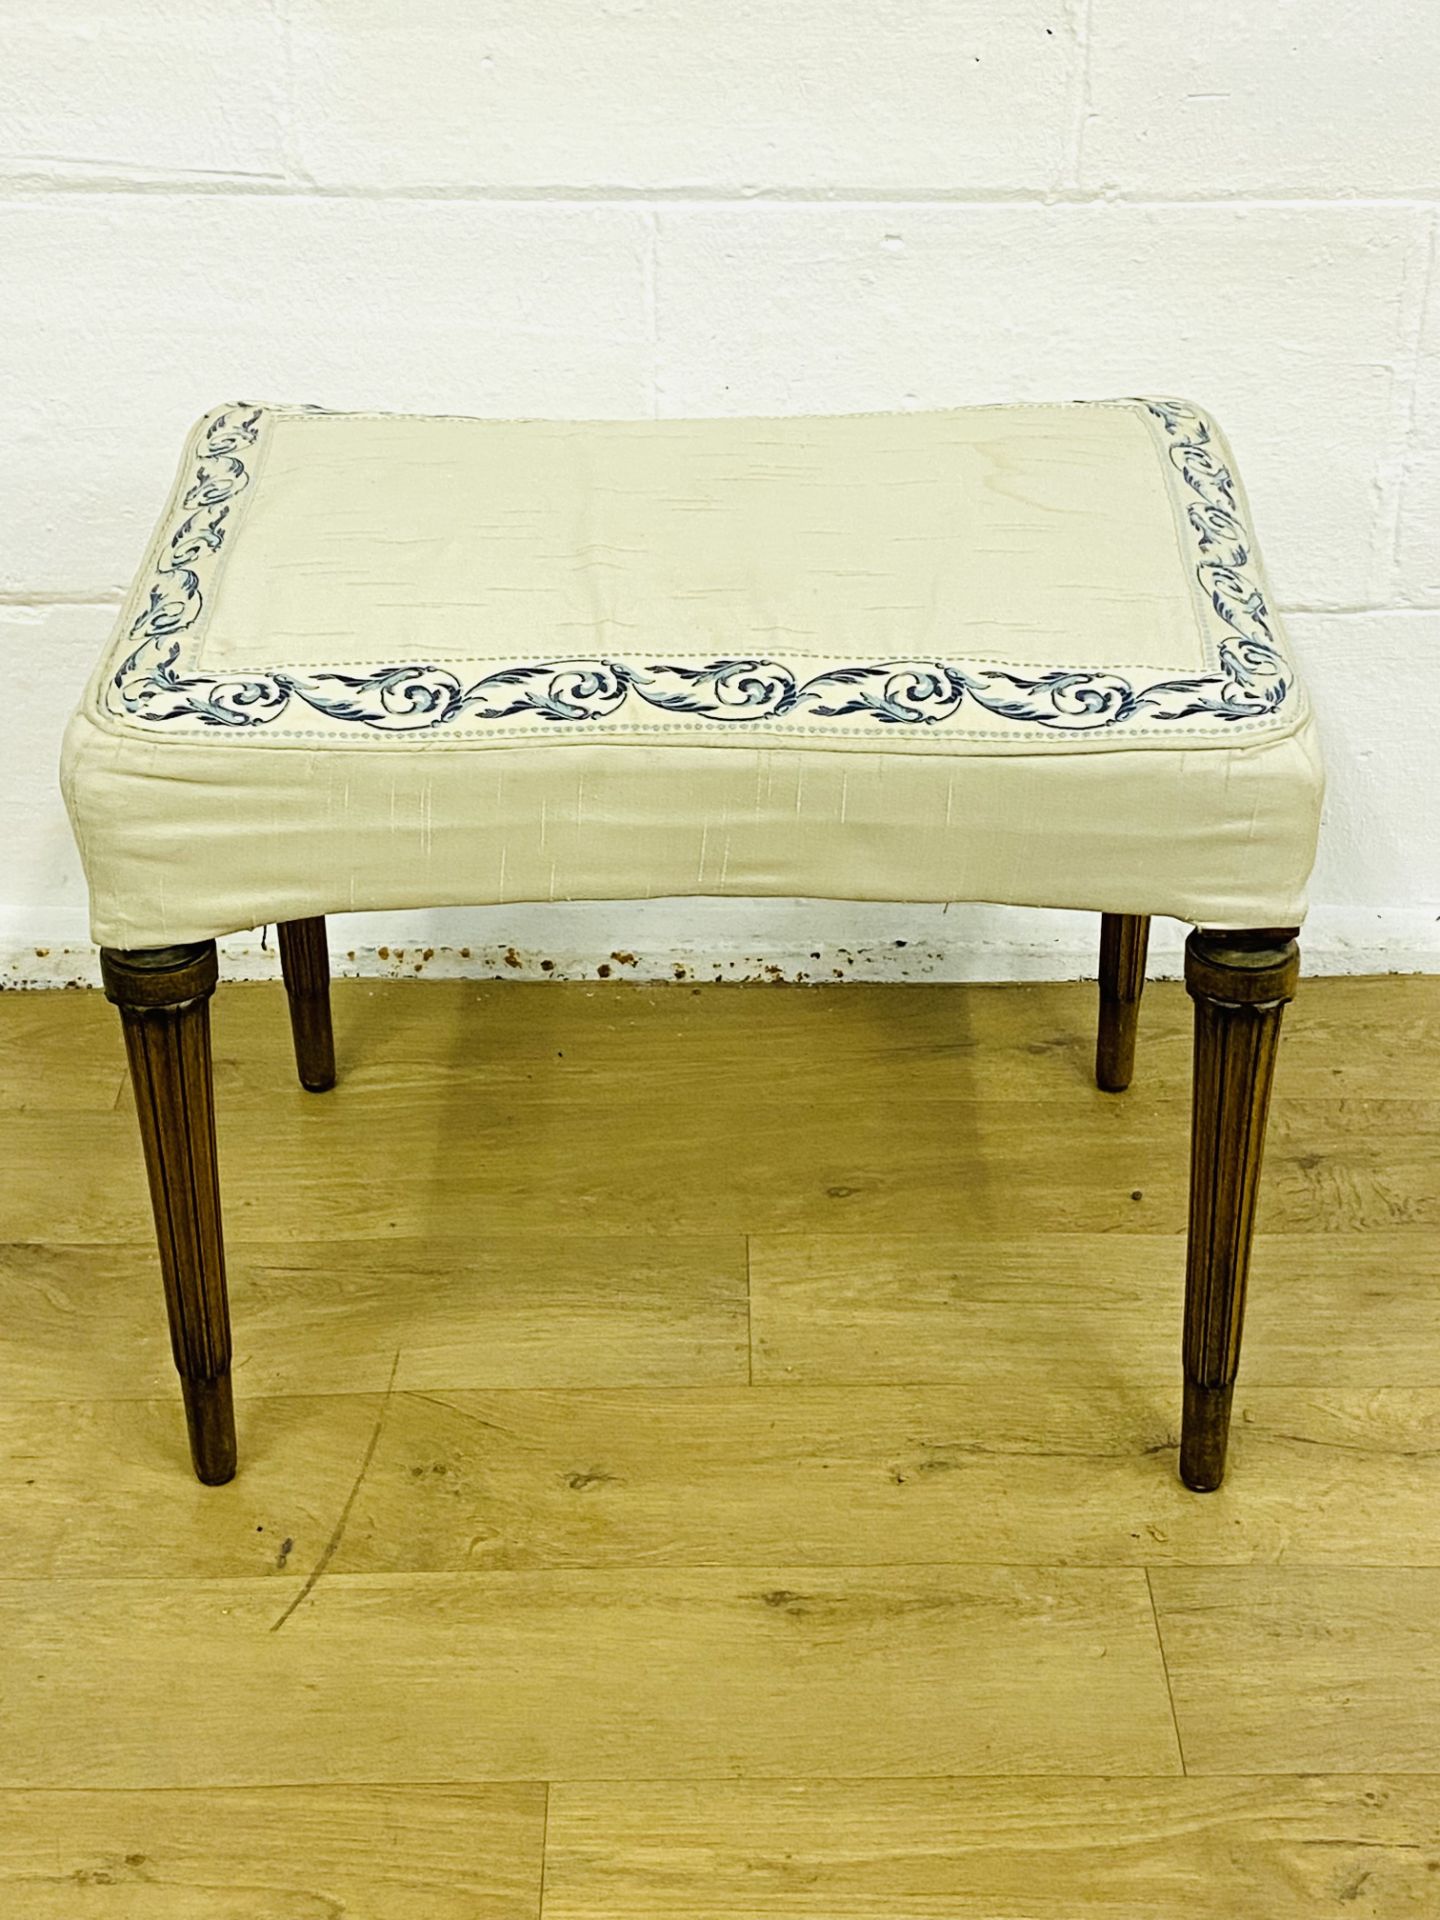 Mahogany upholstered stool